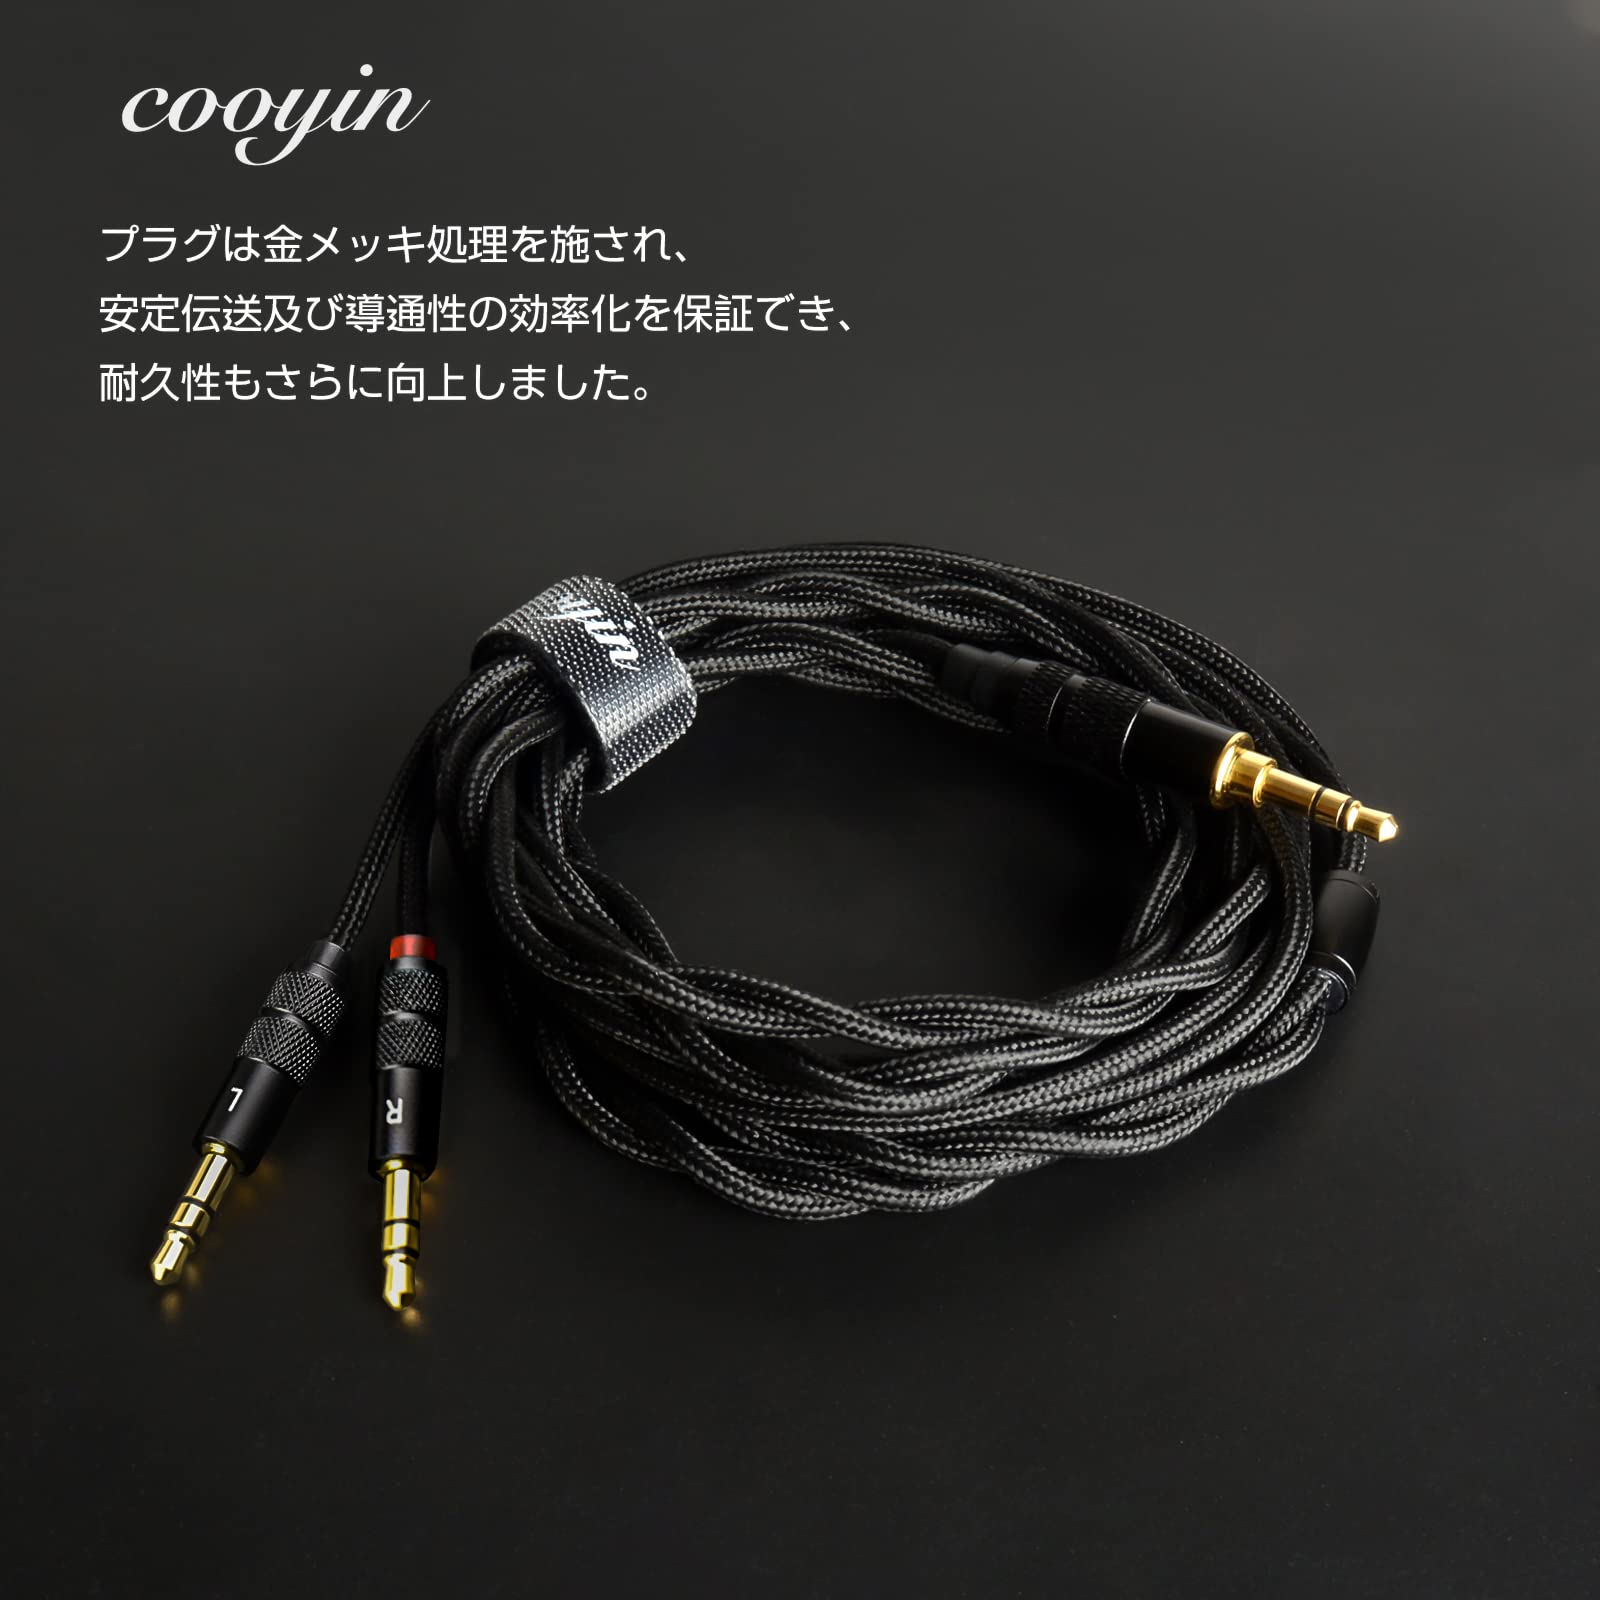 Cooyin リケーブル IE100pro/400pro/500pro専用